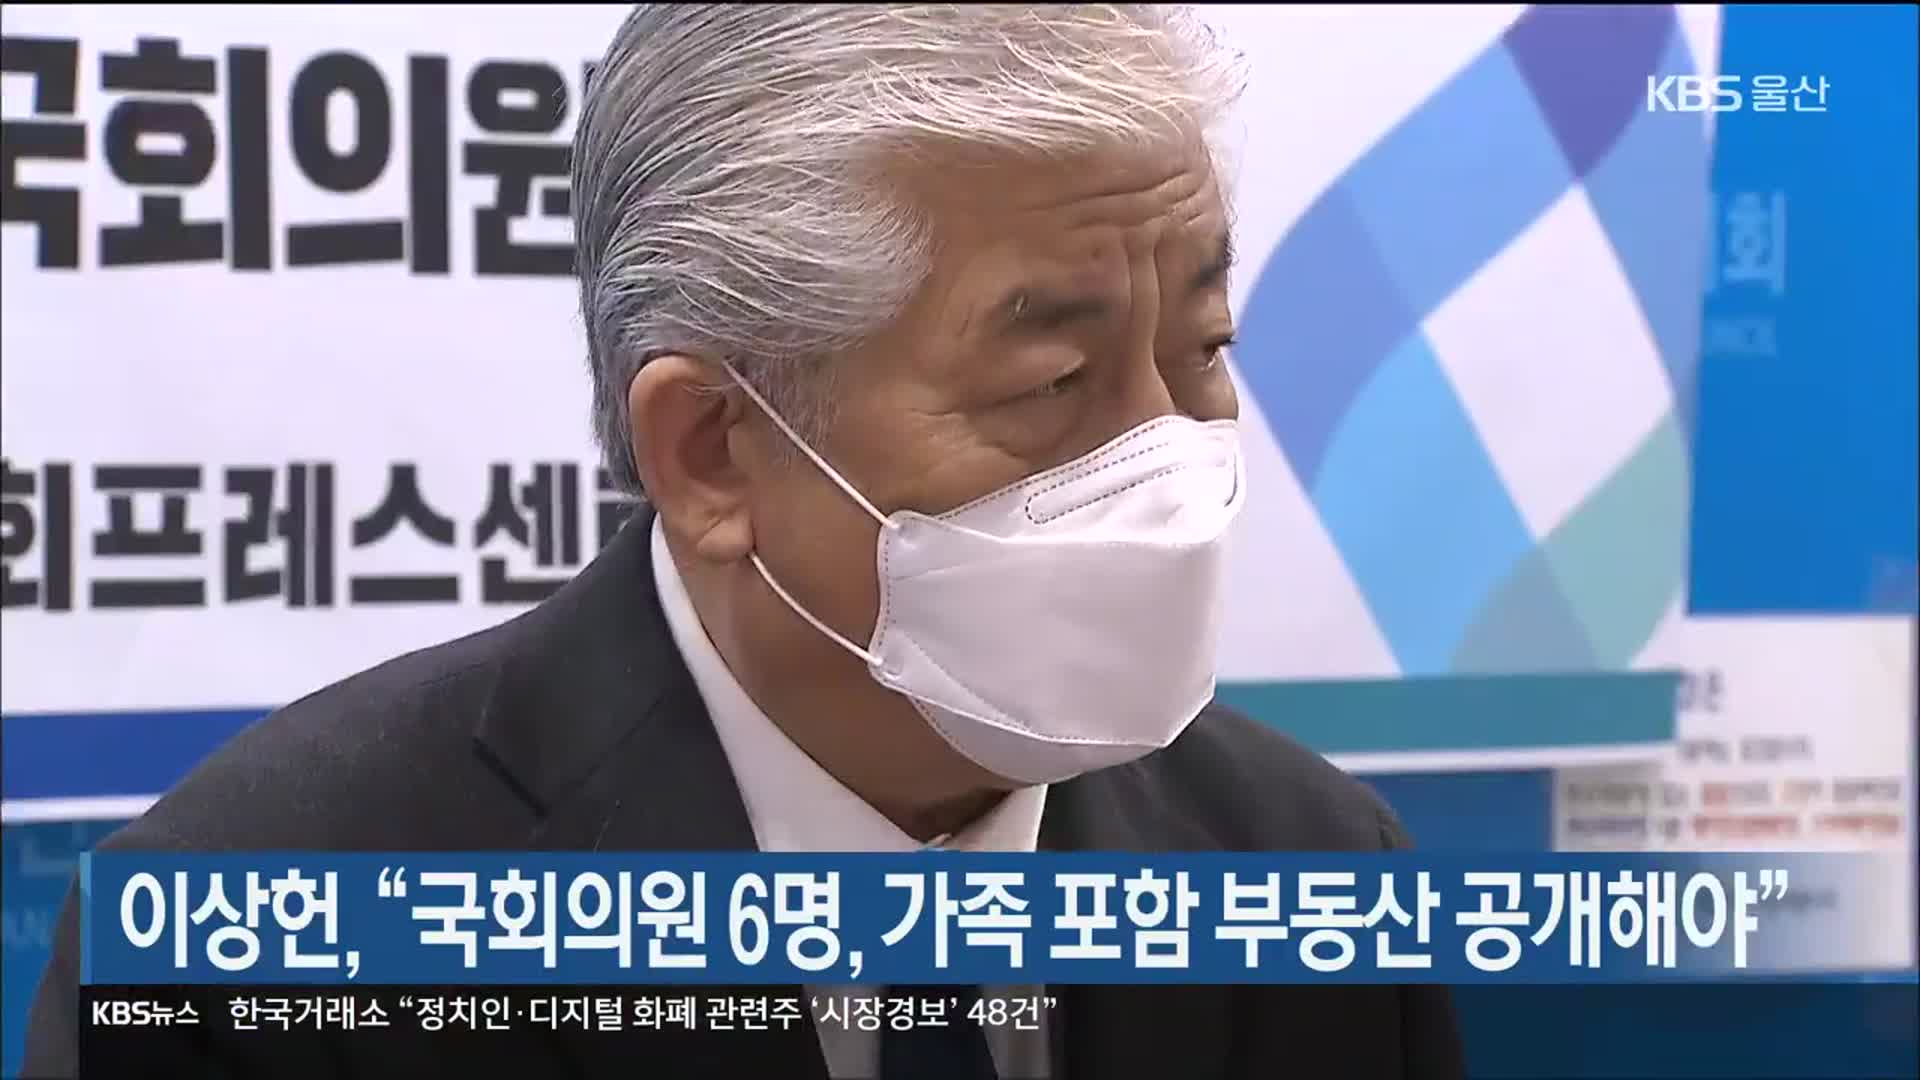 이상헌, “국회의원 6명, 가족 포함 부동산 공개해야”